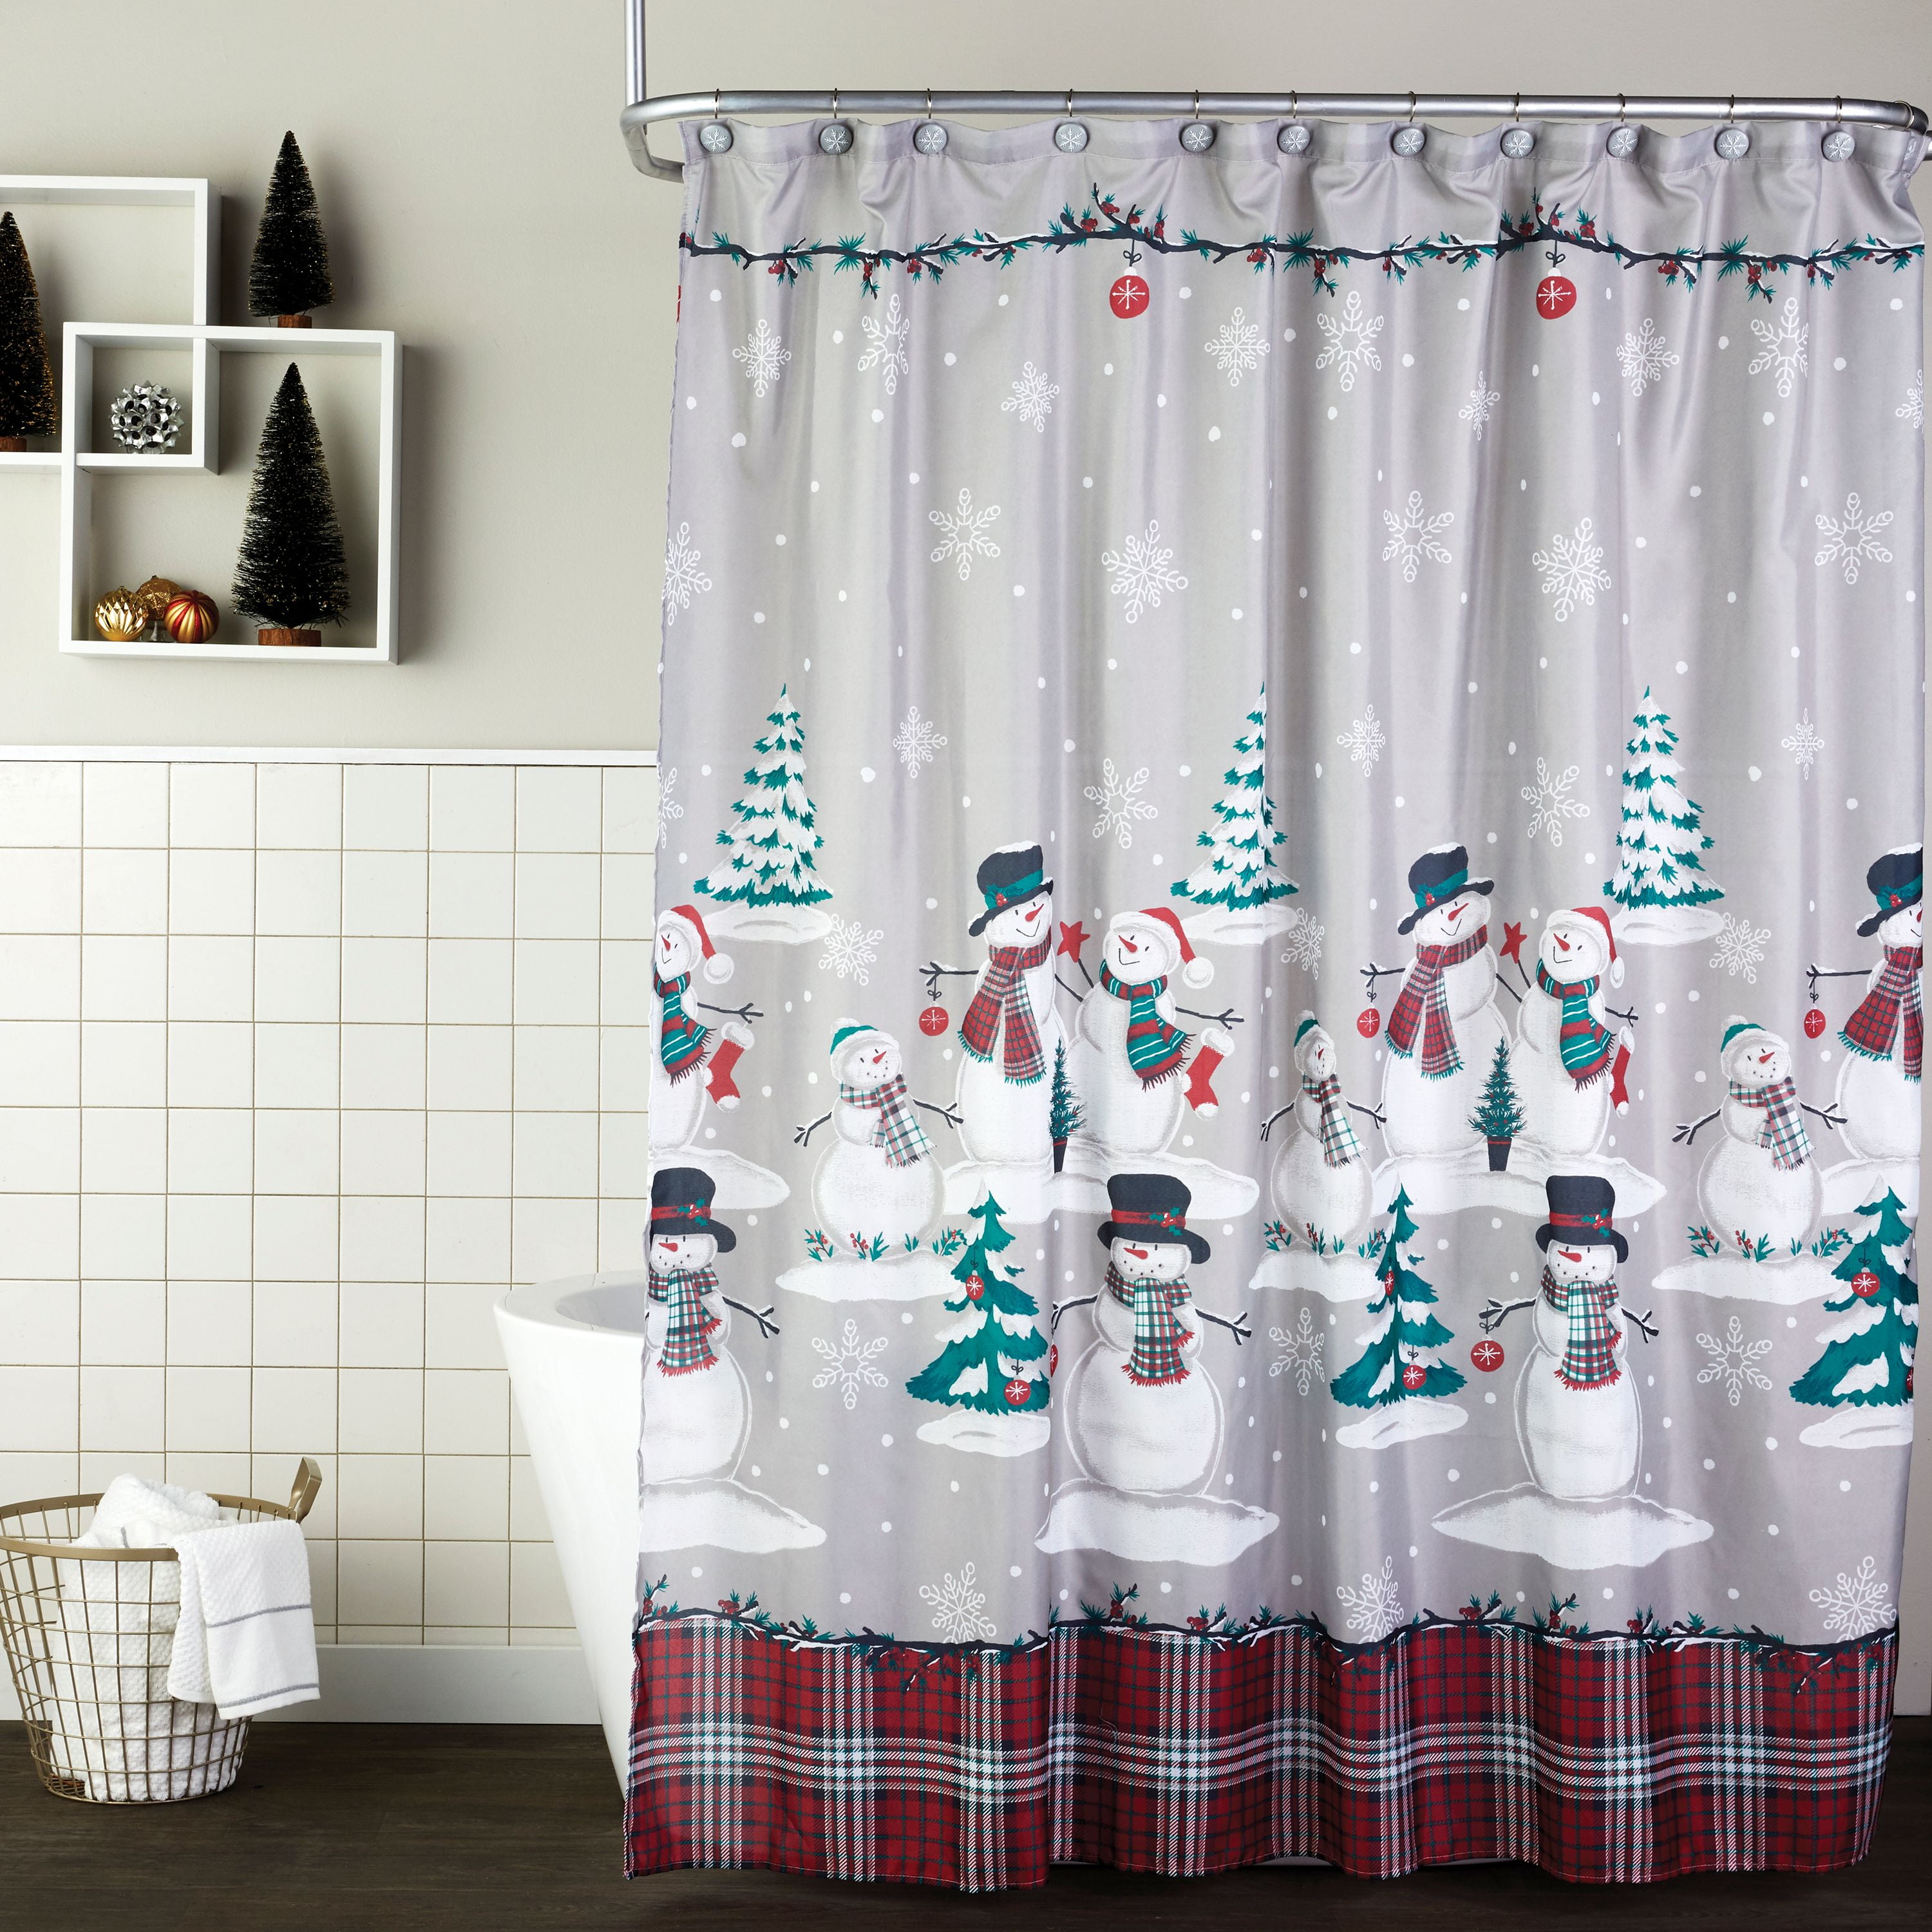 Skl Home Plaid Snowman Shower Curtain, Avanti Tall Snowman Shower Curtain Collection